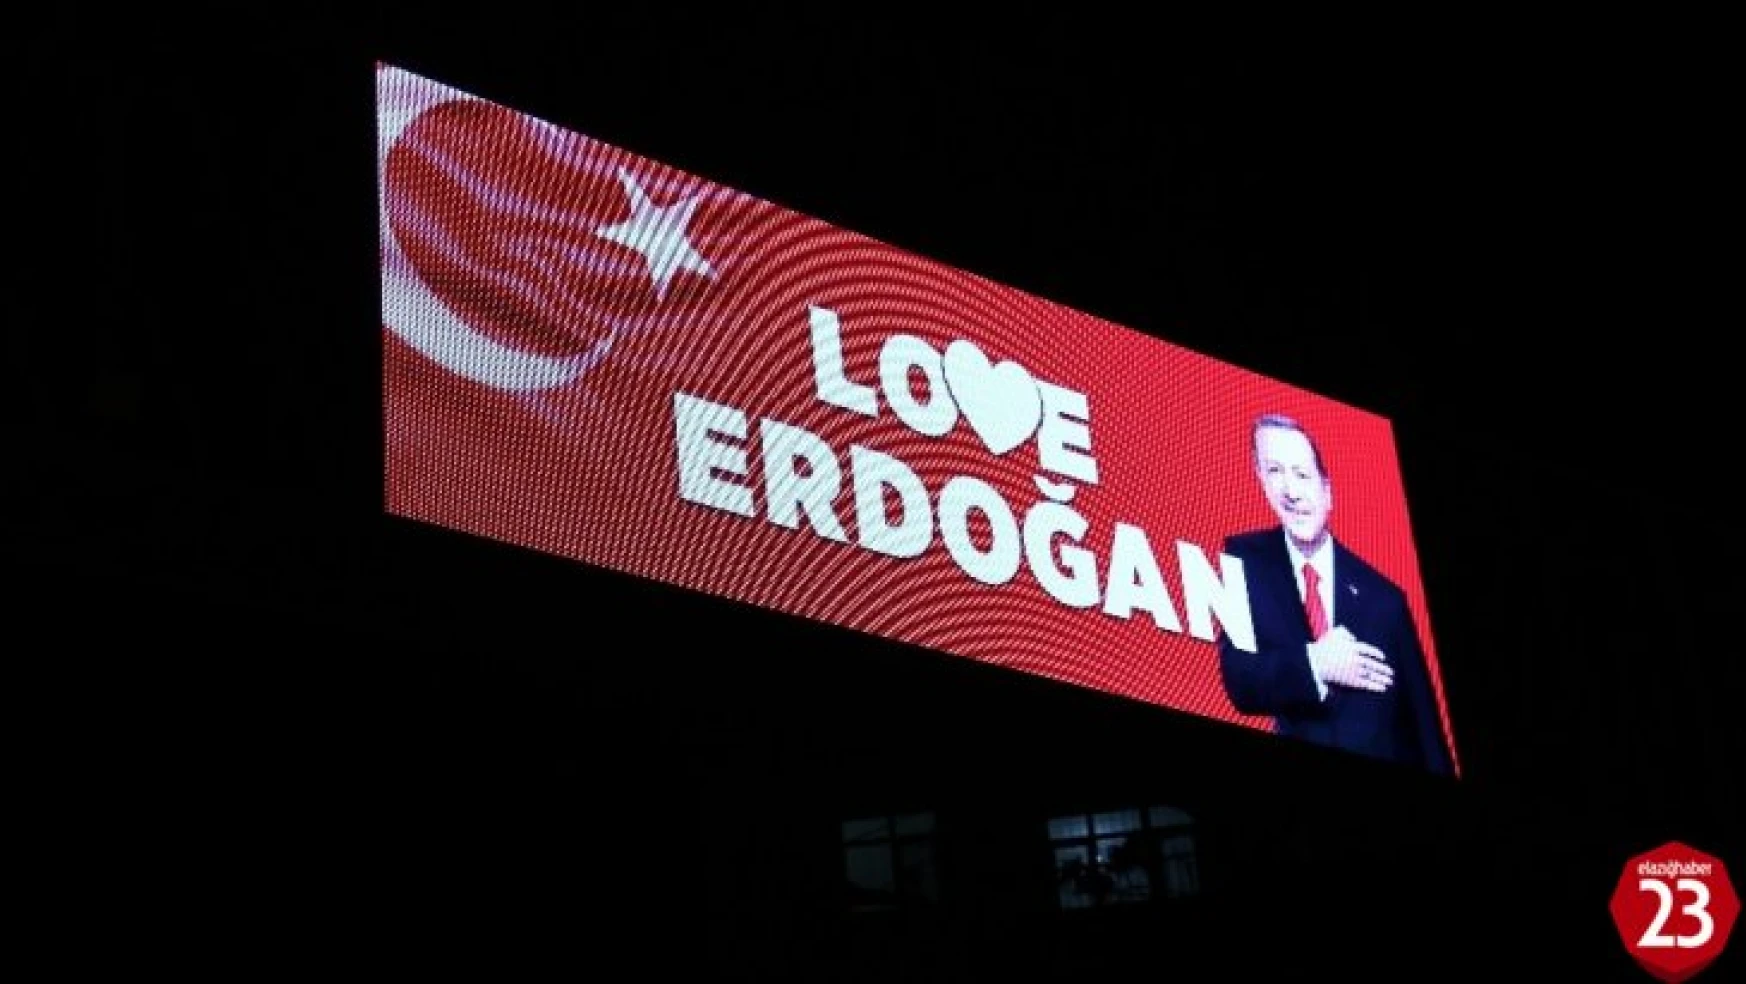 'Stop Erdoğan' skandalına Elazığ'dan 'Love Erdoğan' yanıtı